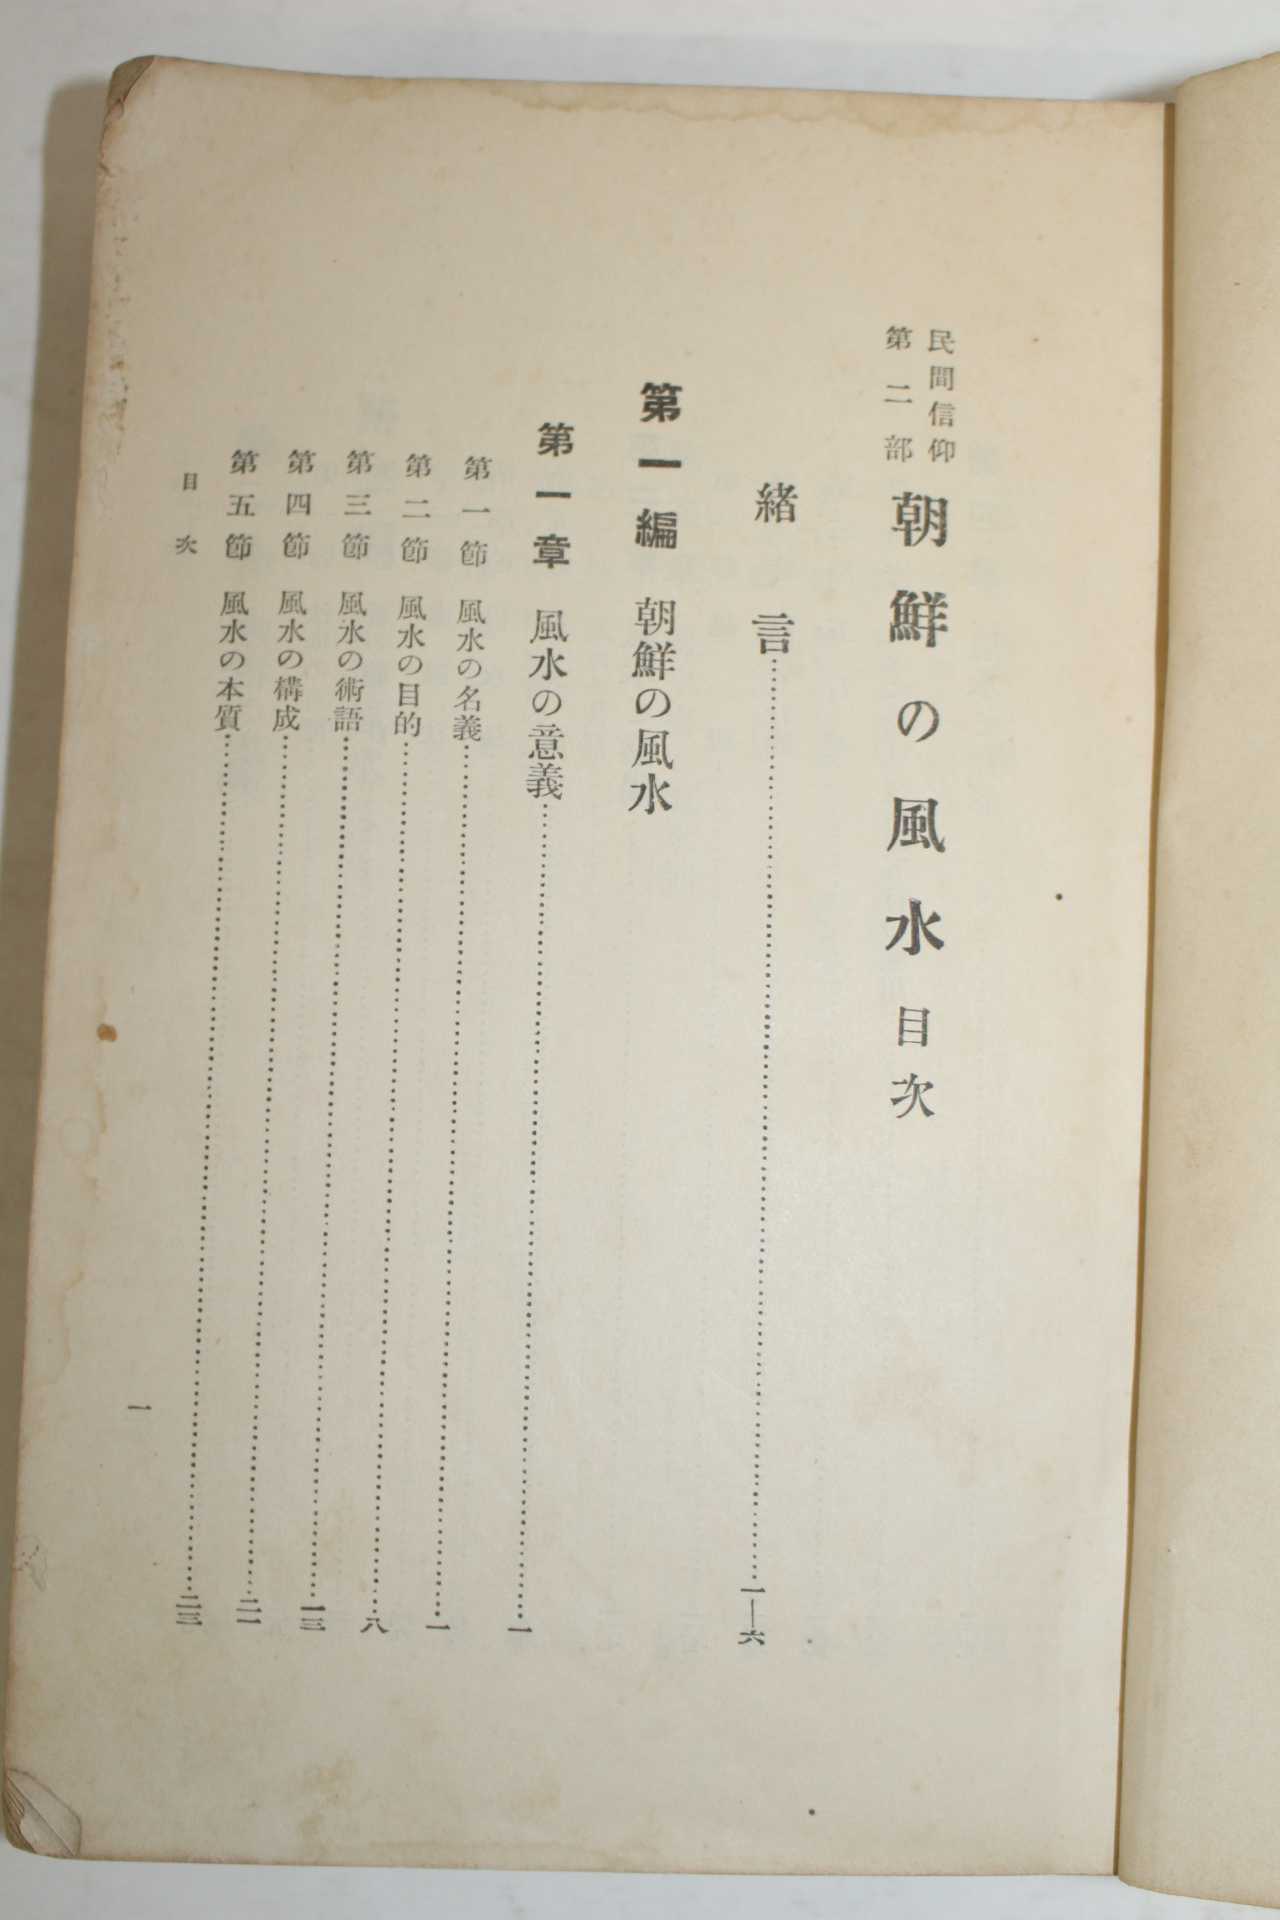 1931년 조선총독부 朝鮮の風水(조선의 풍수)